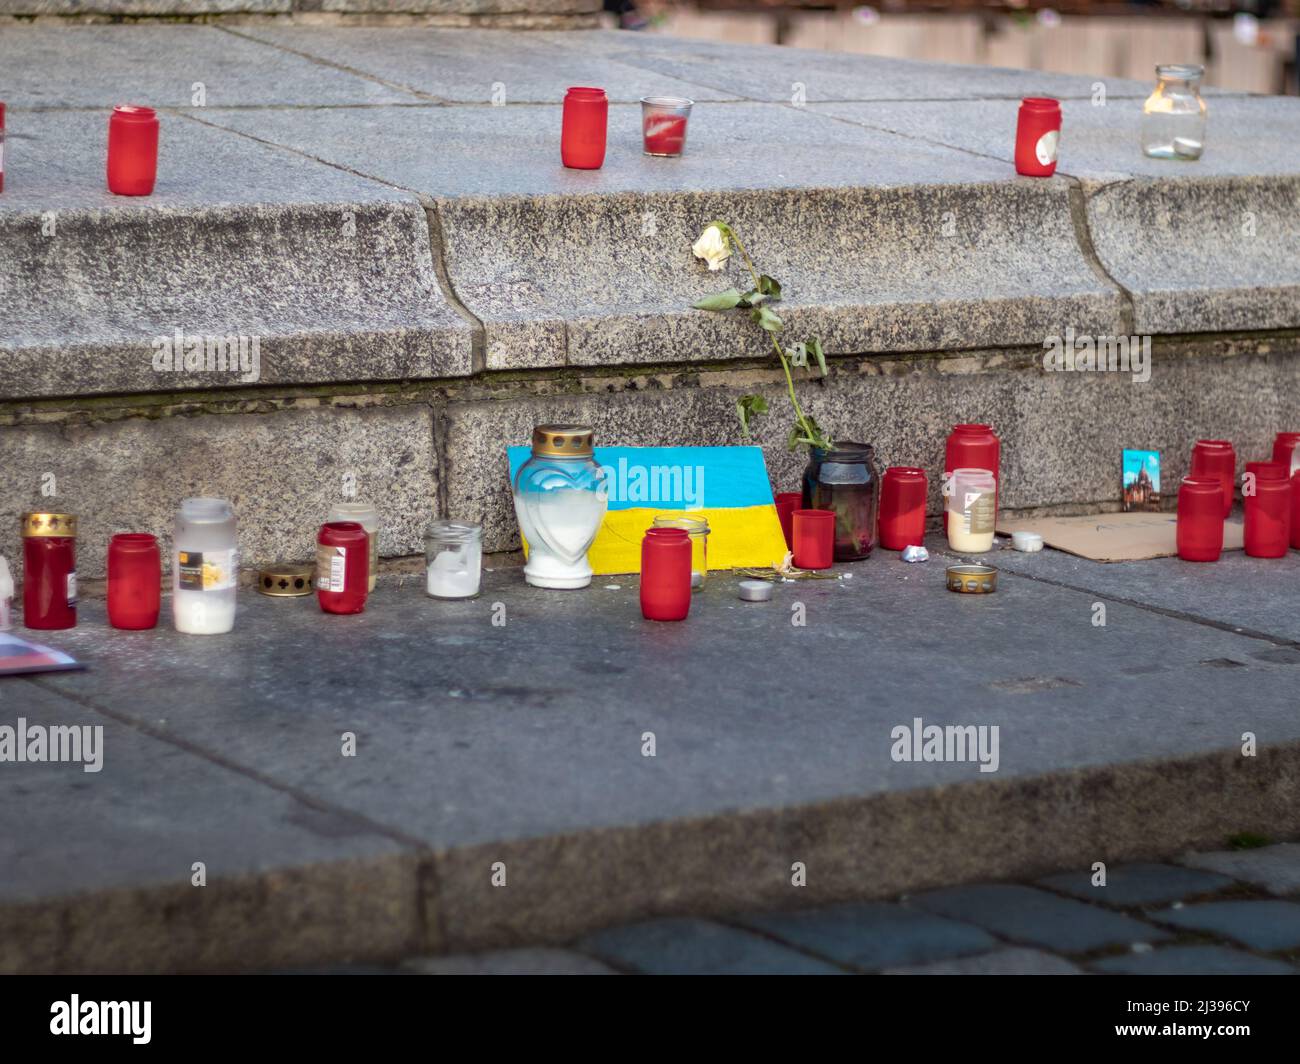 Kerzen und eine ukrainische Flagge, um den Krieg zwischen der Ukraine und Russland zu betrauern. Bürgersteig in der Stadt mit Symbolen einer Demonstration gegen das Militär. Stockfoto